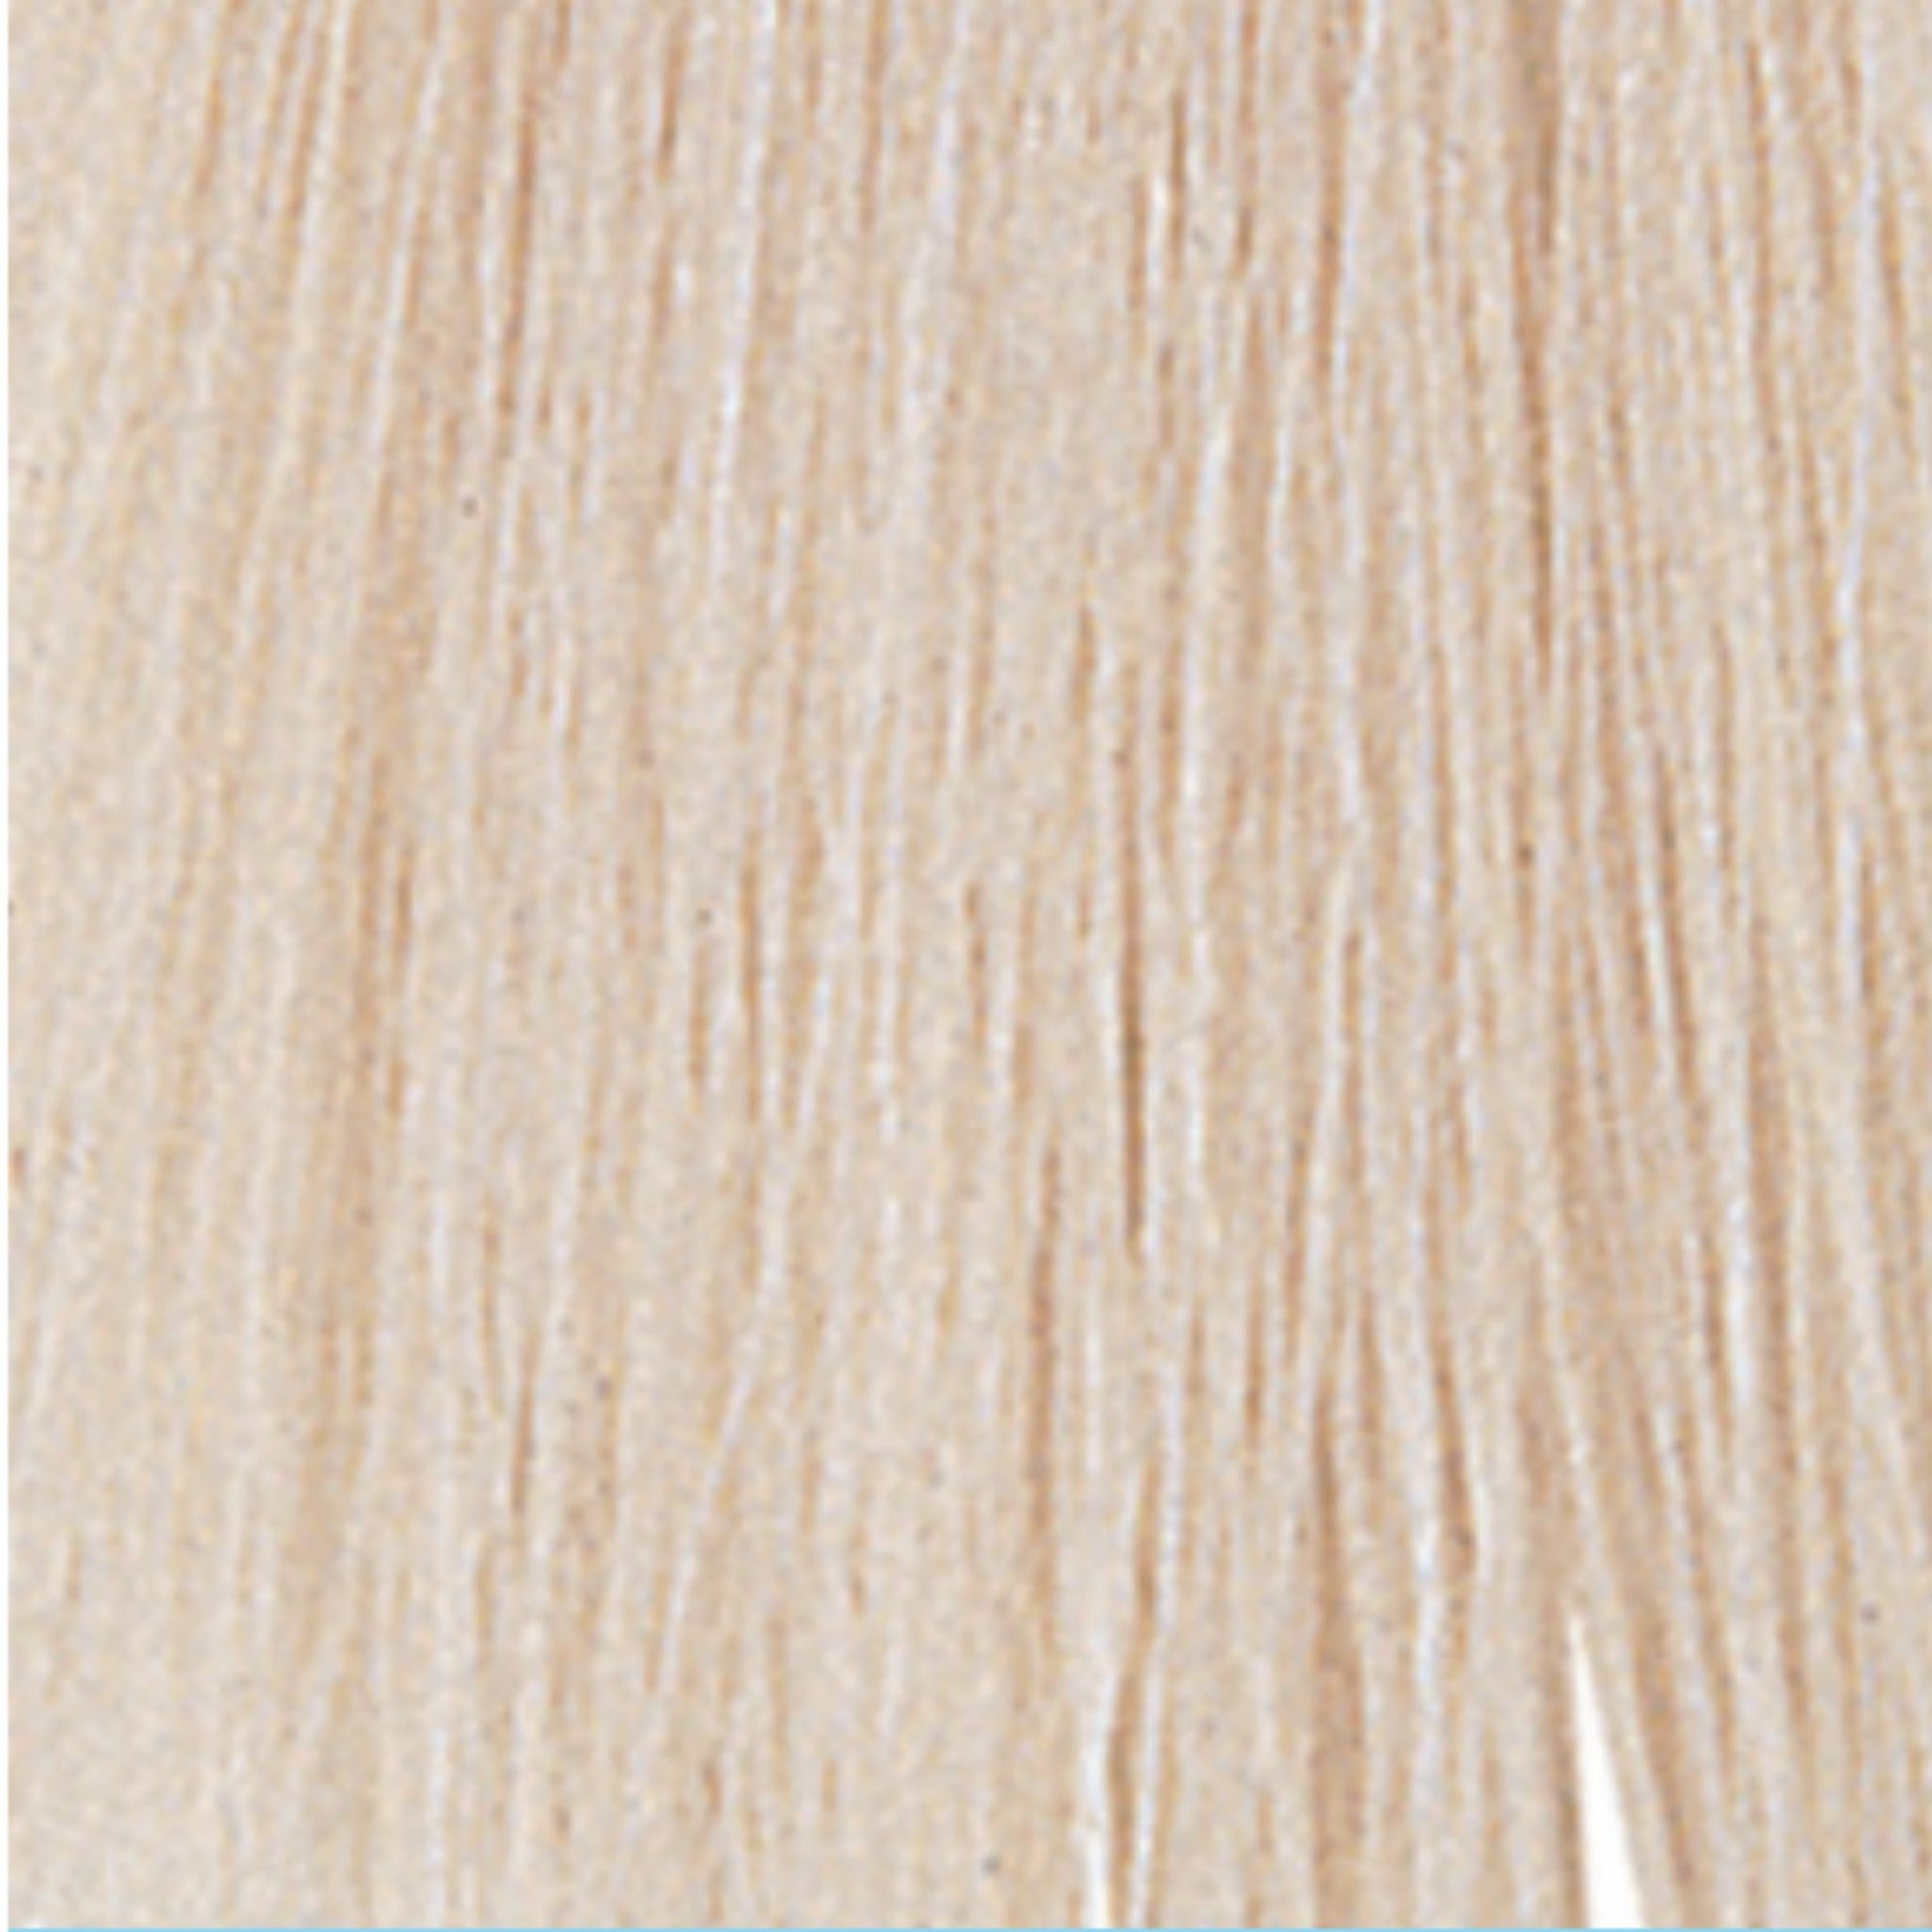 Wella Colour Charm T14 Pale Ash Blonde Toner Swatch Australia